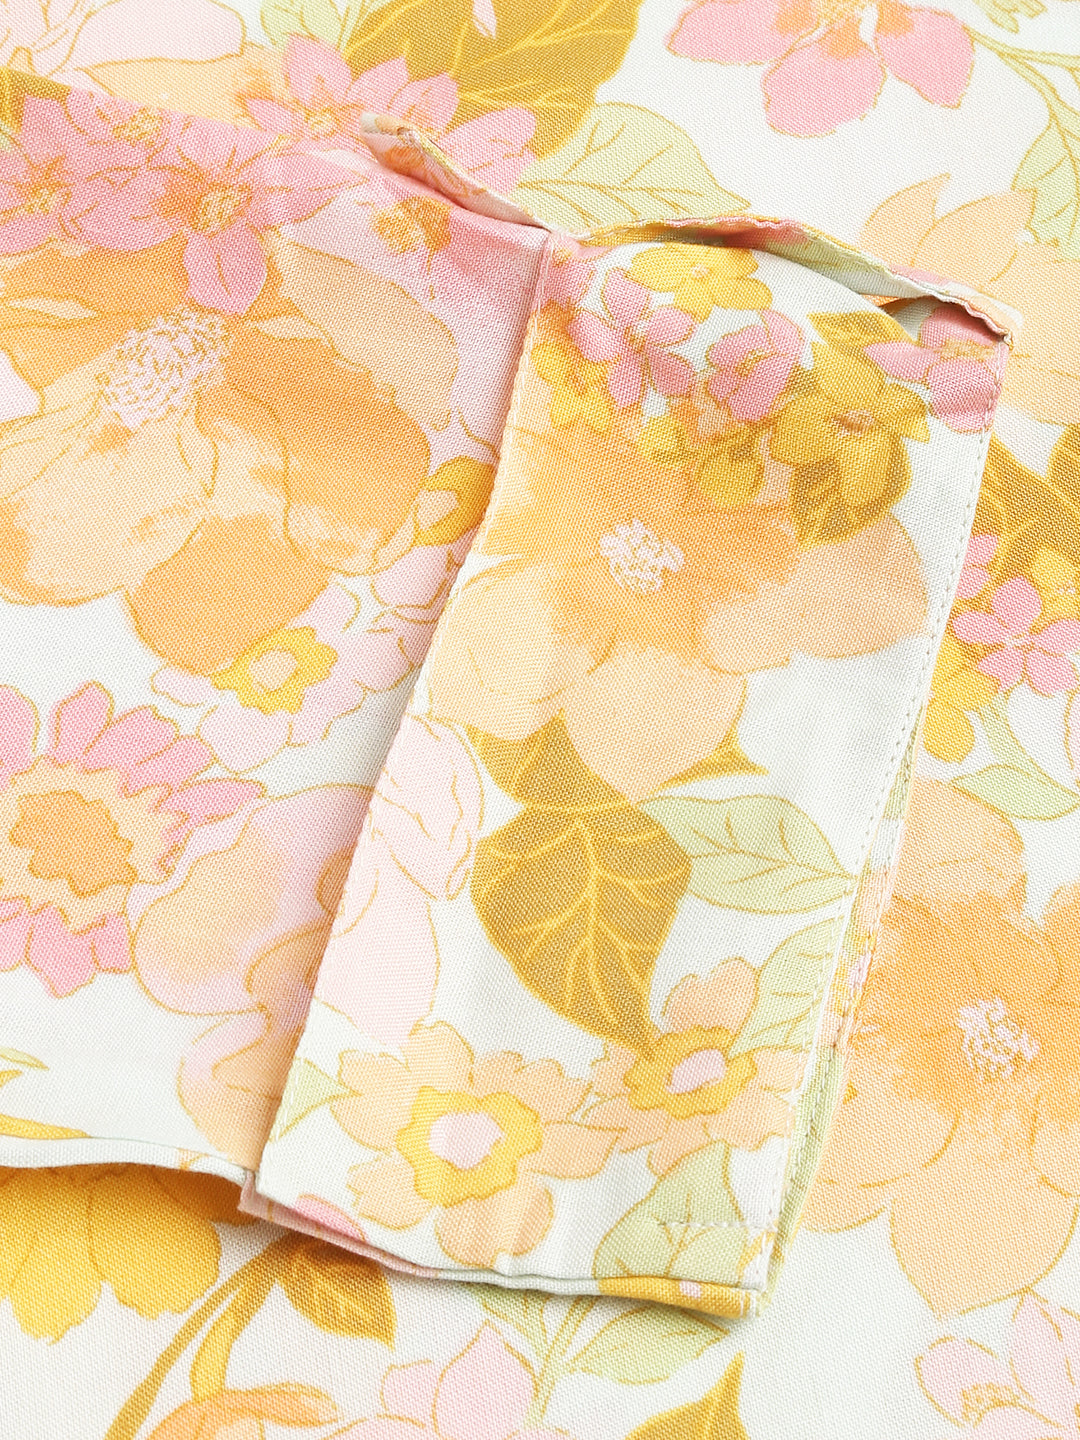 Divena Multi Colored Floral Digital Printed Straight Fold Sleeve Kurta